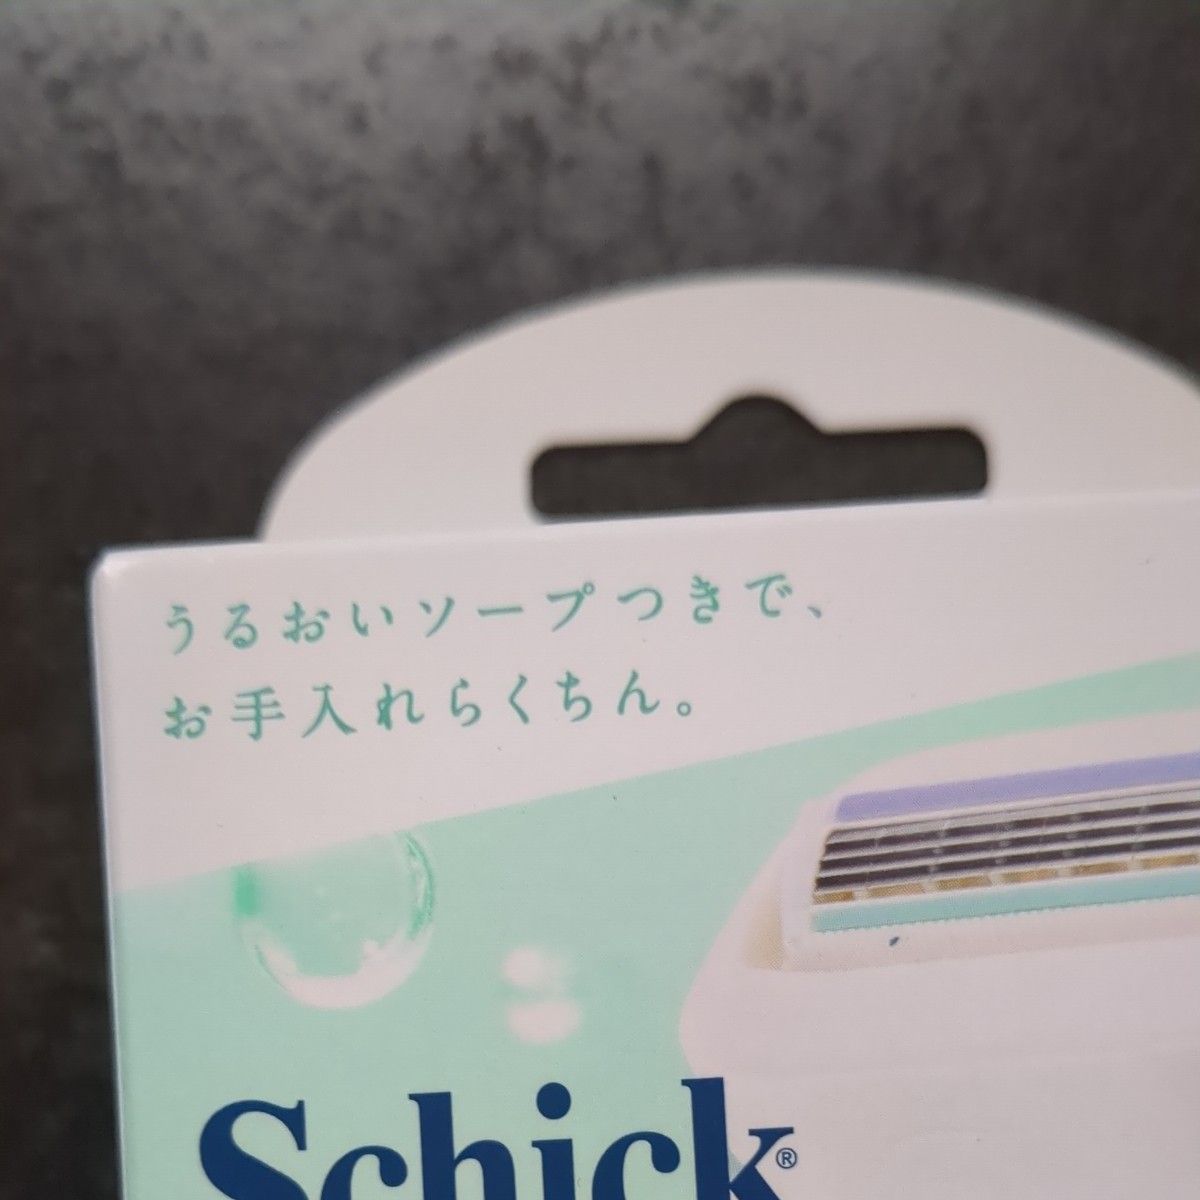 シック Schick イントゥイション 敏感肌用 替刃 (3コ入) ×2セット